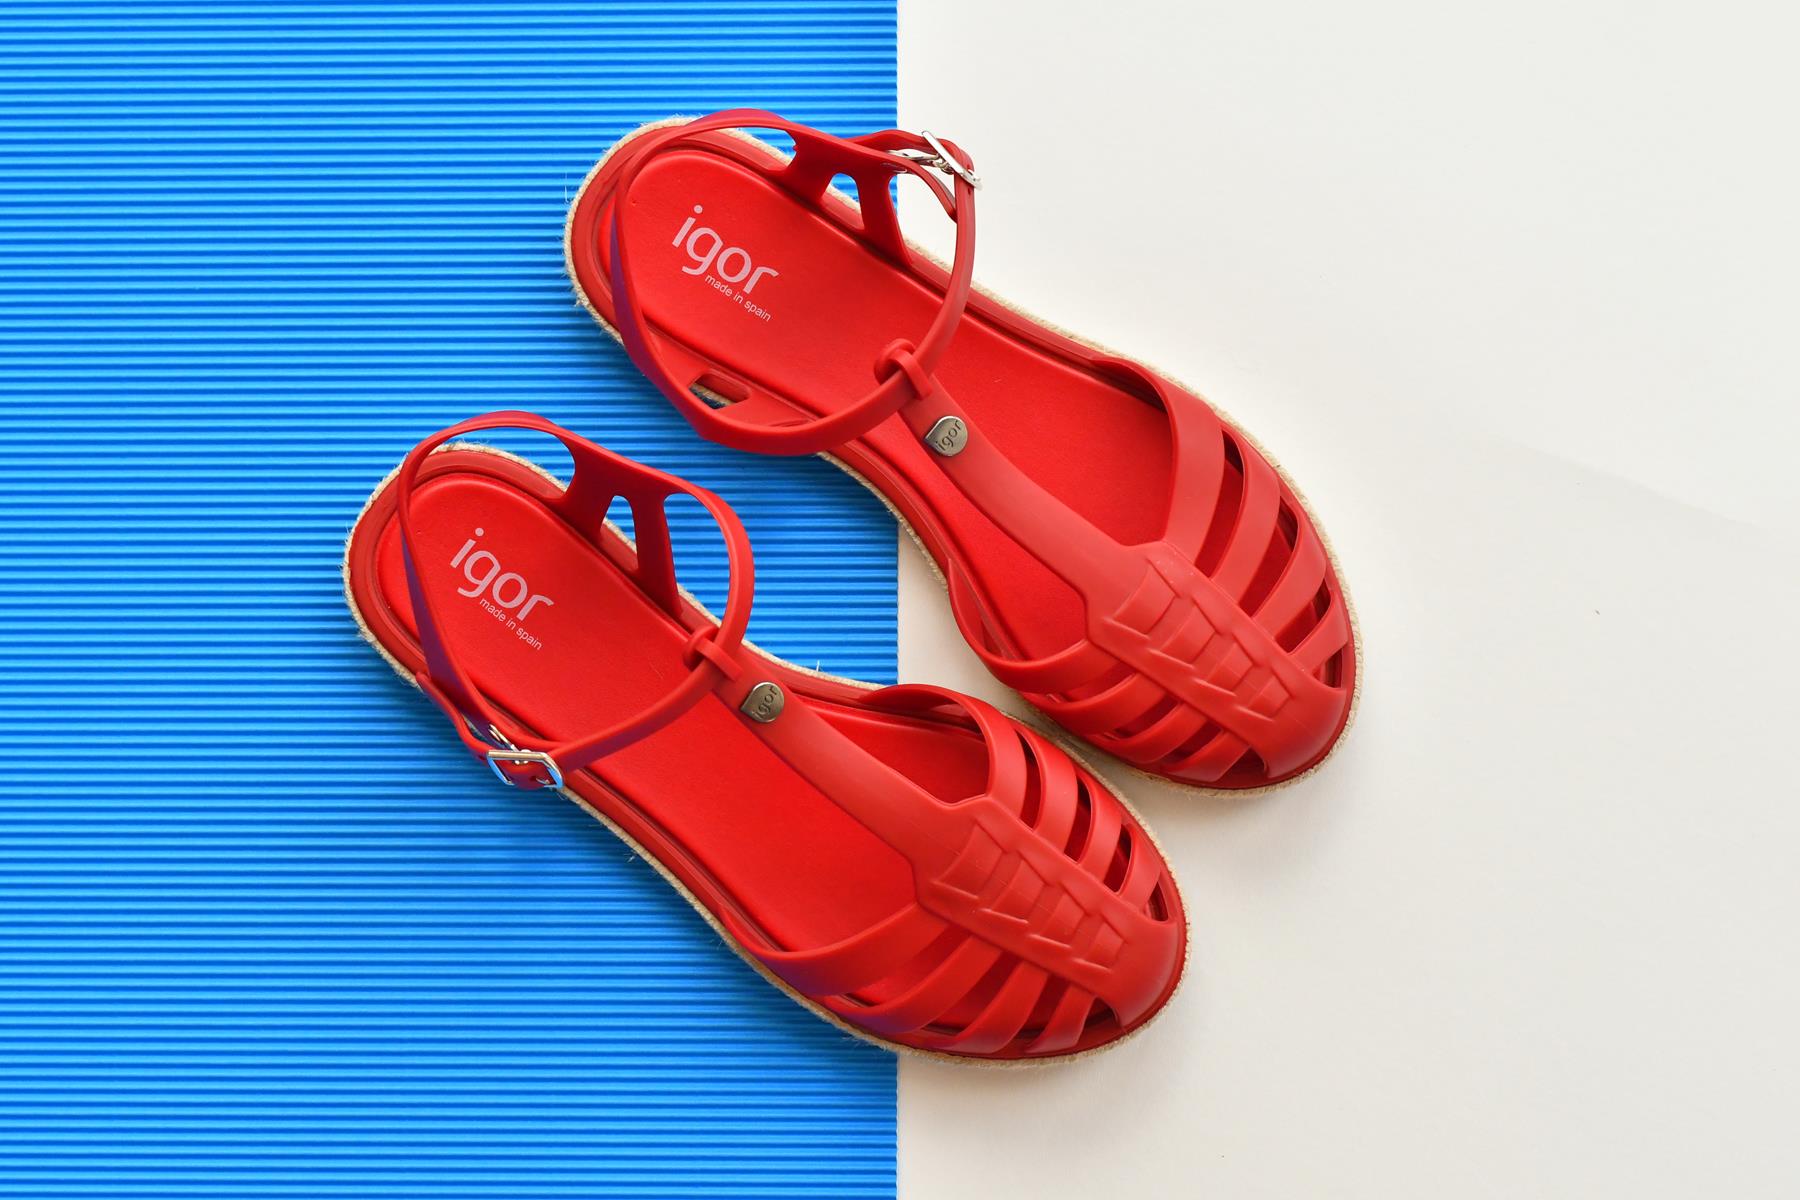 S10160-005_AmorShoes-Igor-Shoes-Altea-Cangrejera-goma-mujer-esparto-cierre-hebilla-color-azul-ROJO-red-s10160-005